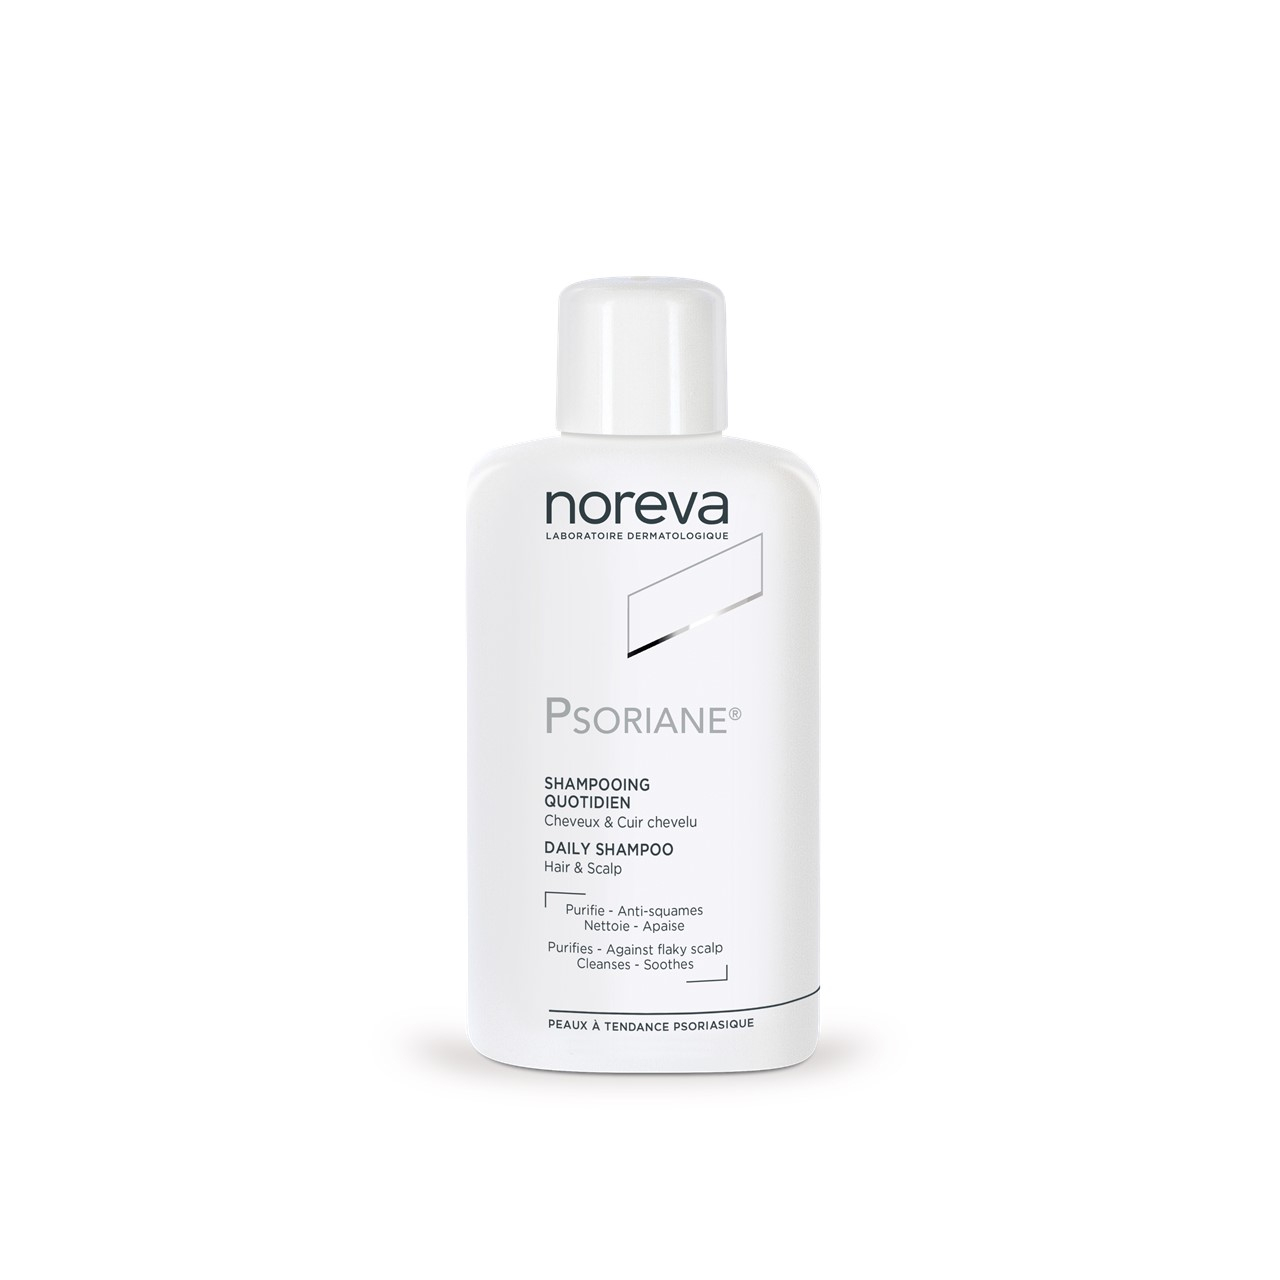 Noreva Psoriane Shampoo Regular 125ml